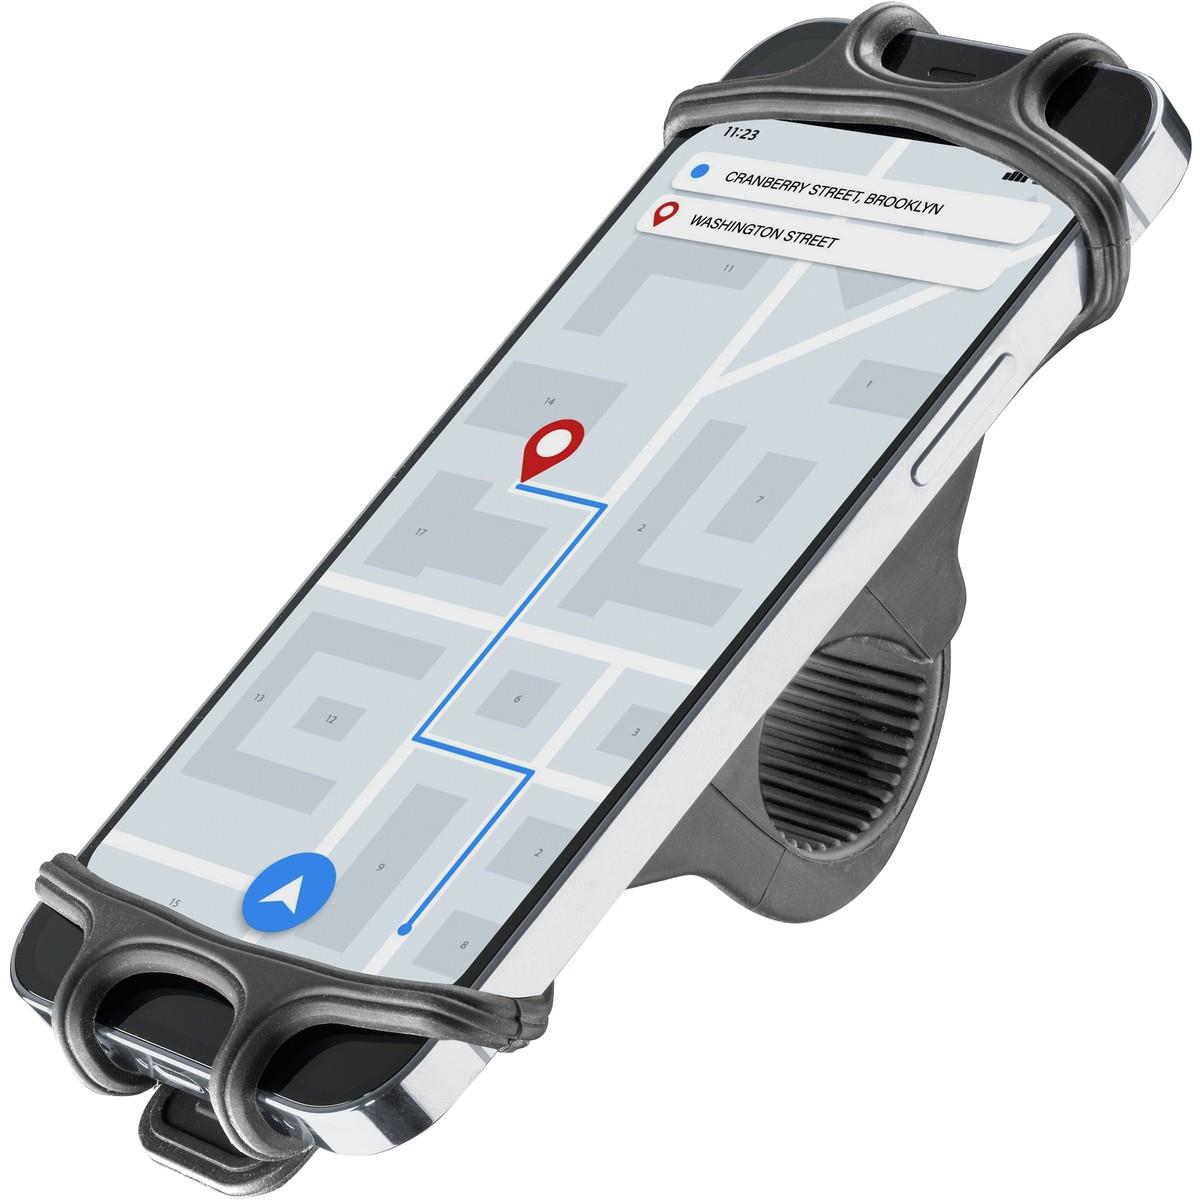 Smartphonehalterung aus Silikon für Fahrräder und E-Scooter